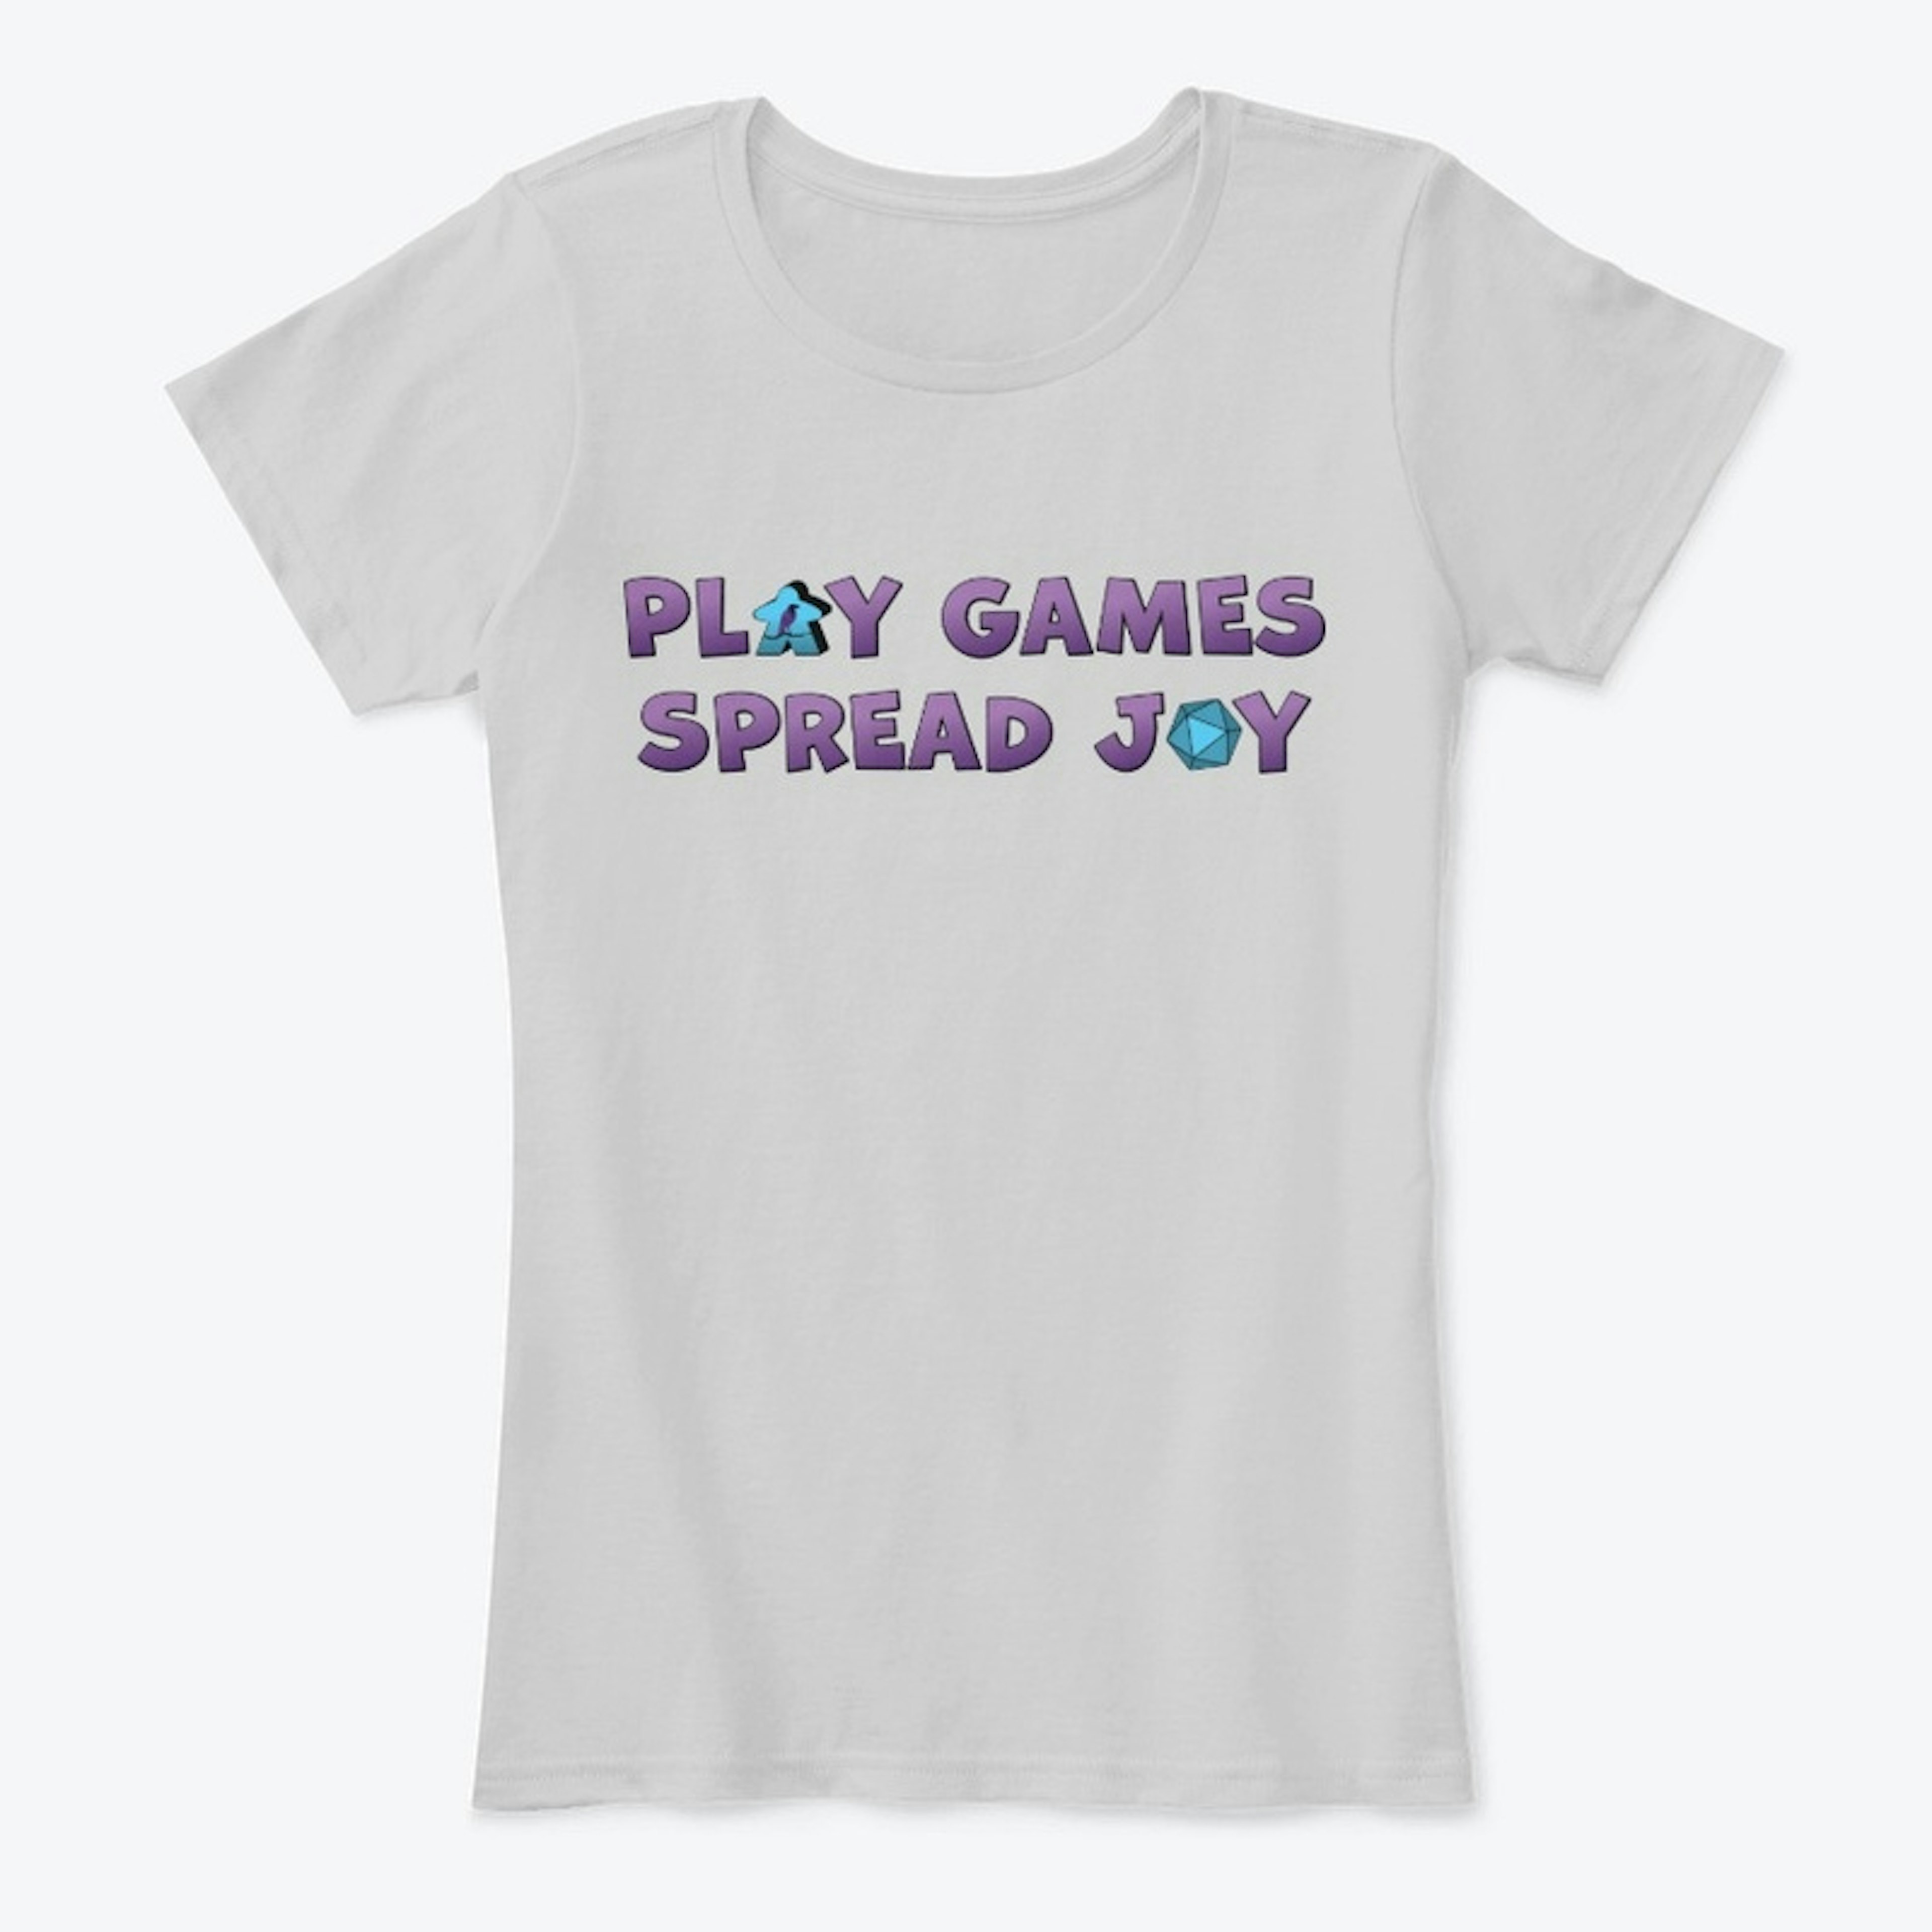 "Play Games Spread Joy" Tops